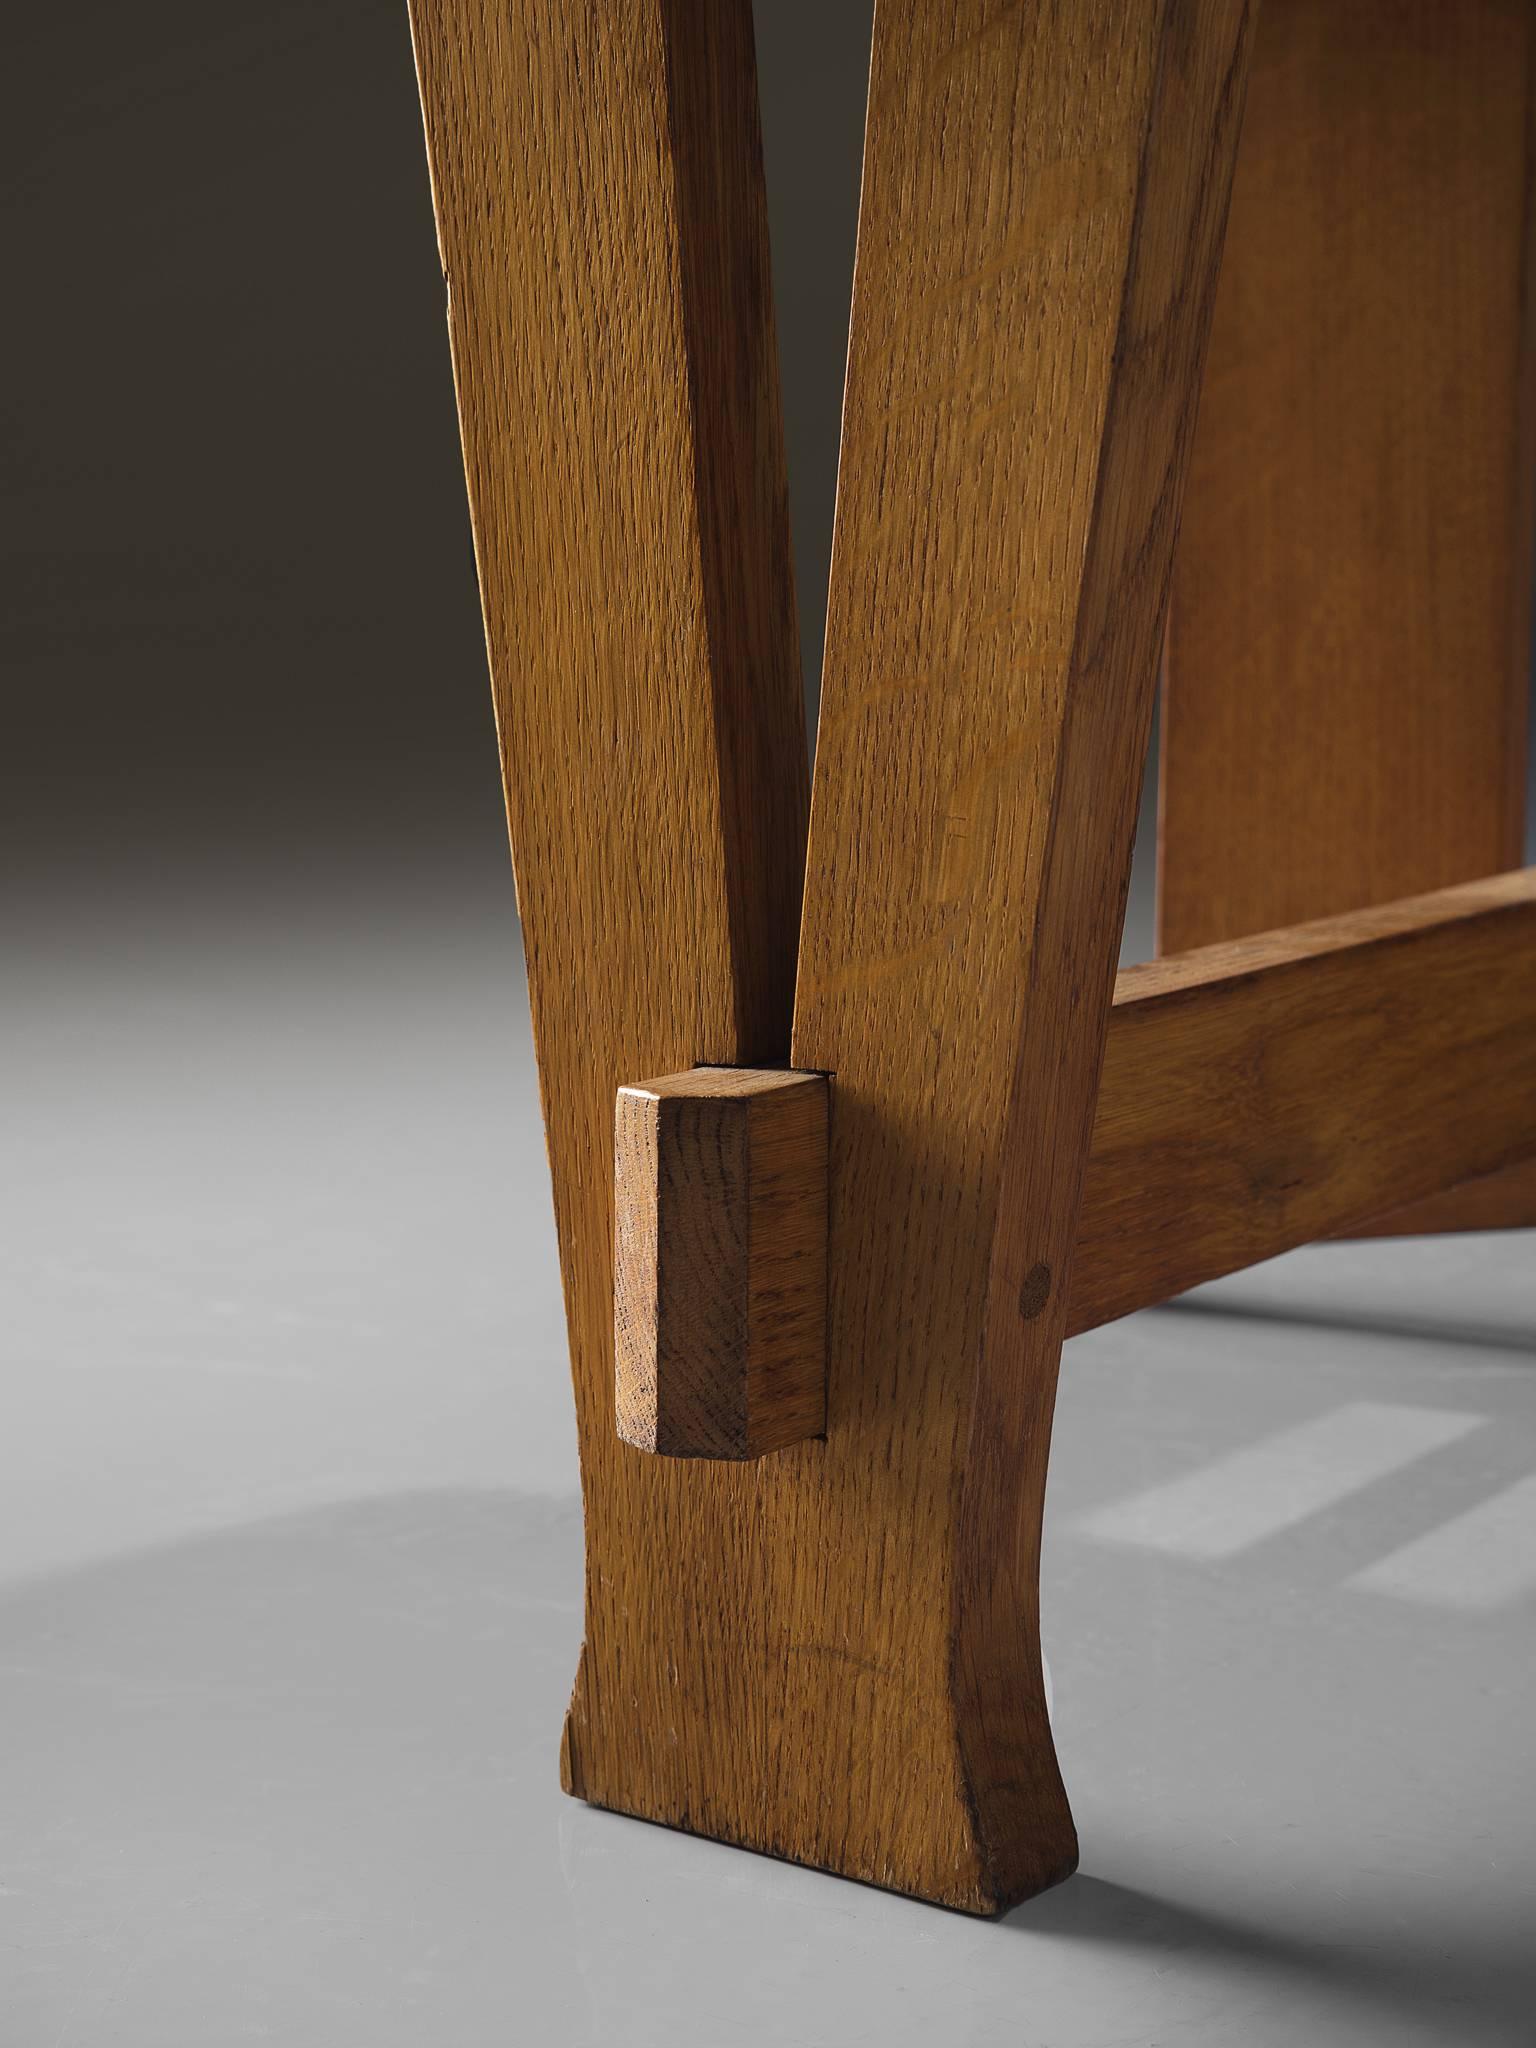 Fabric Dutch Art Deco Chair by Laurens Groen, circa 1928